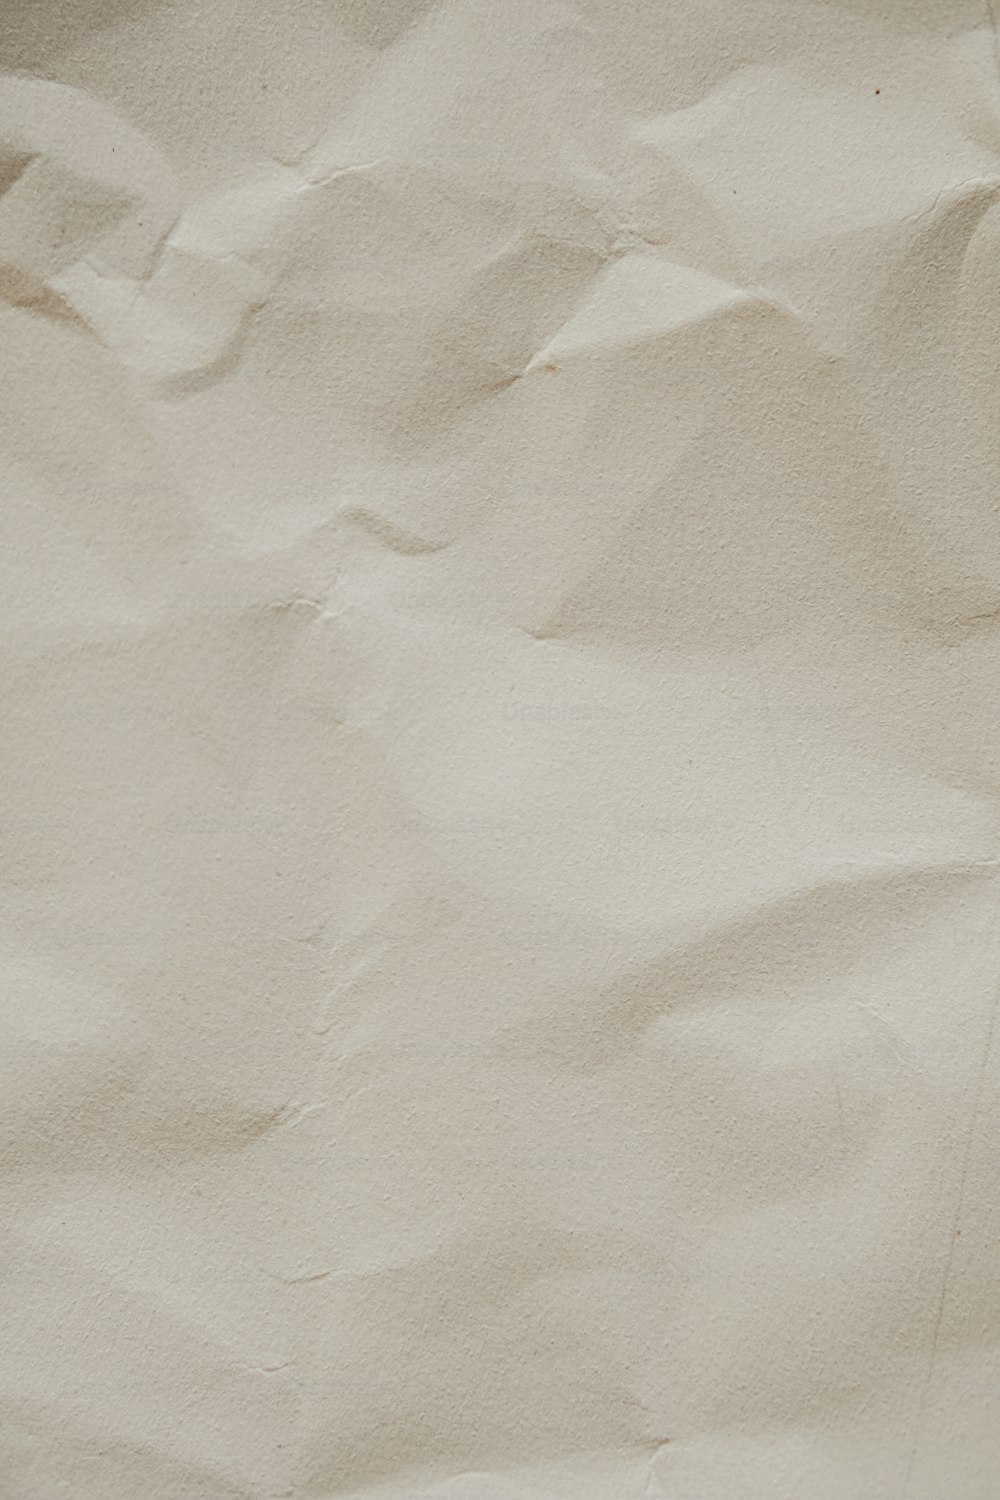 un téléphone portable posé sur un morceau de papier